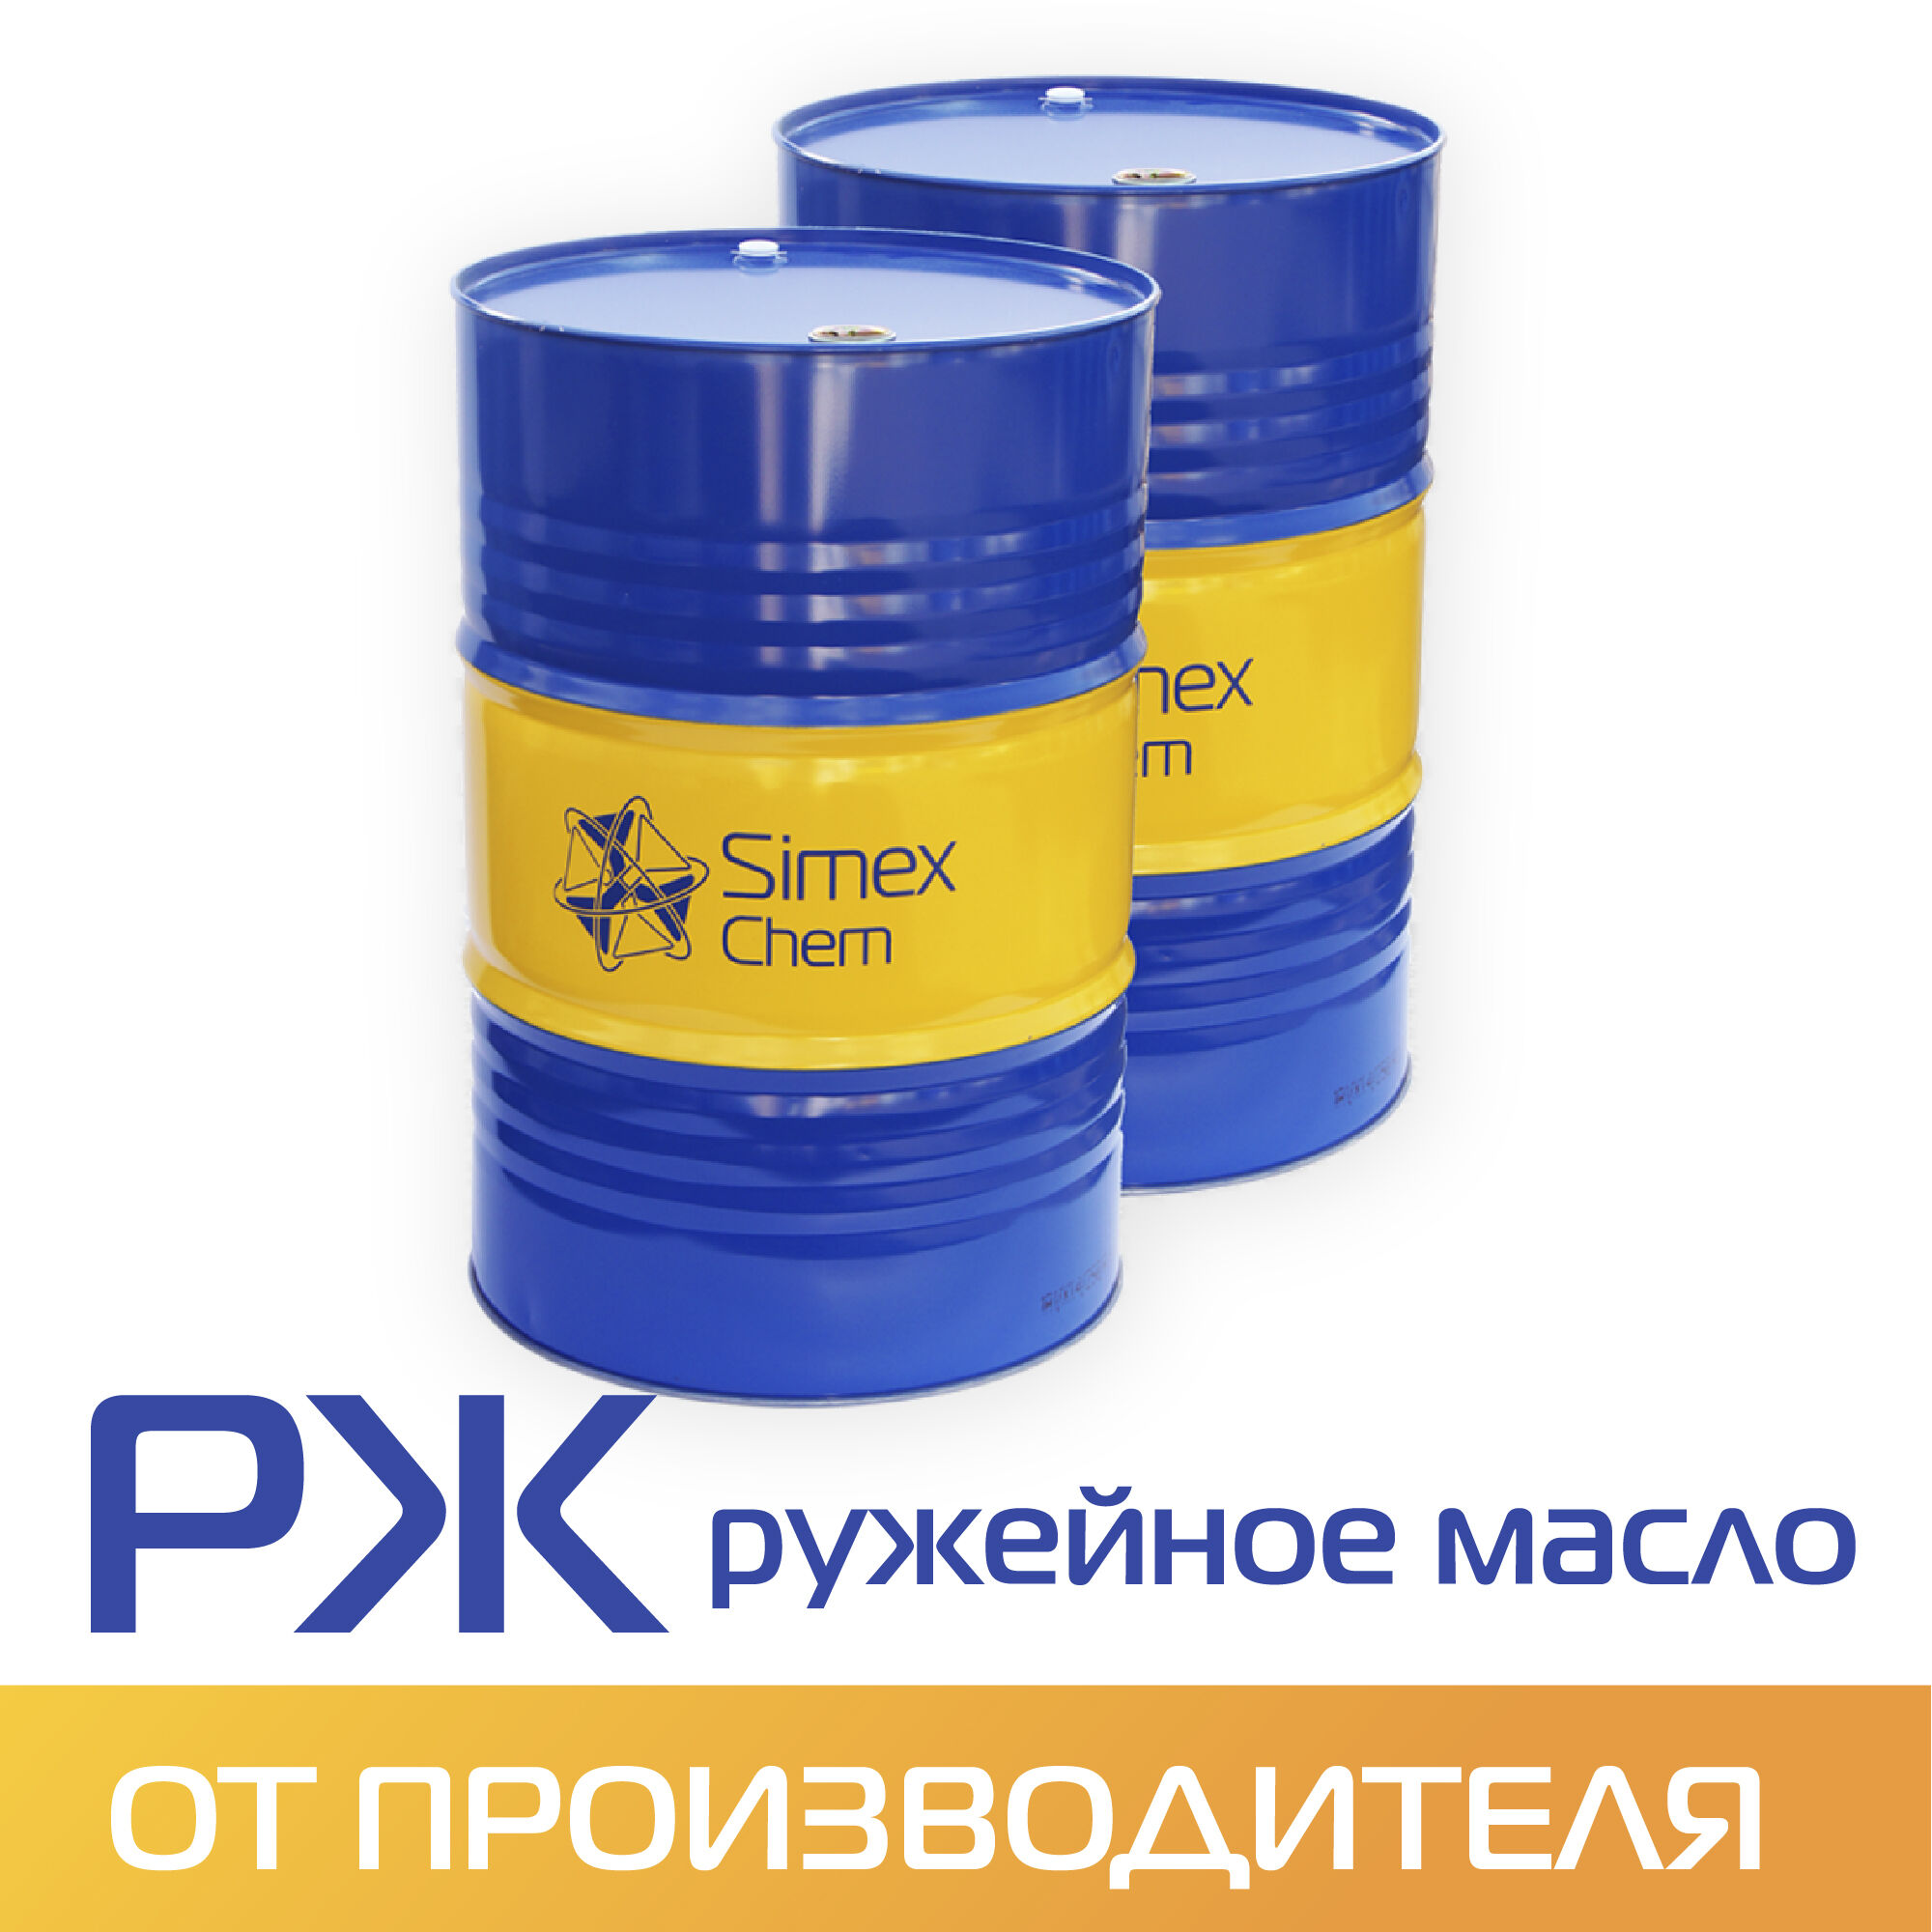 Ружейное масло РЖ (Бочка 170 кг.)